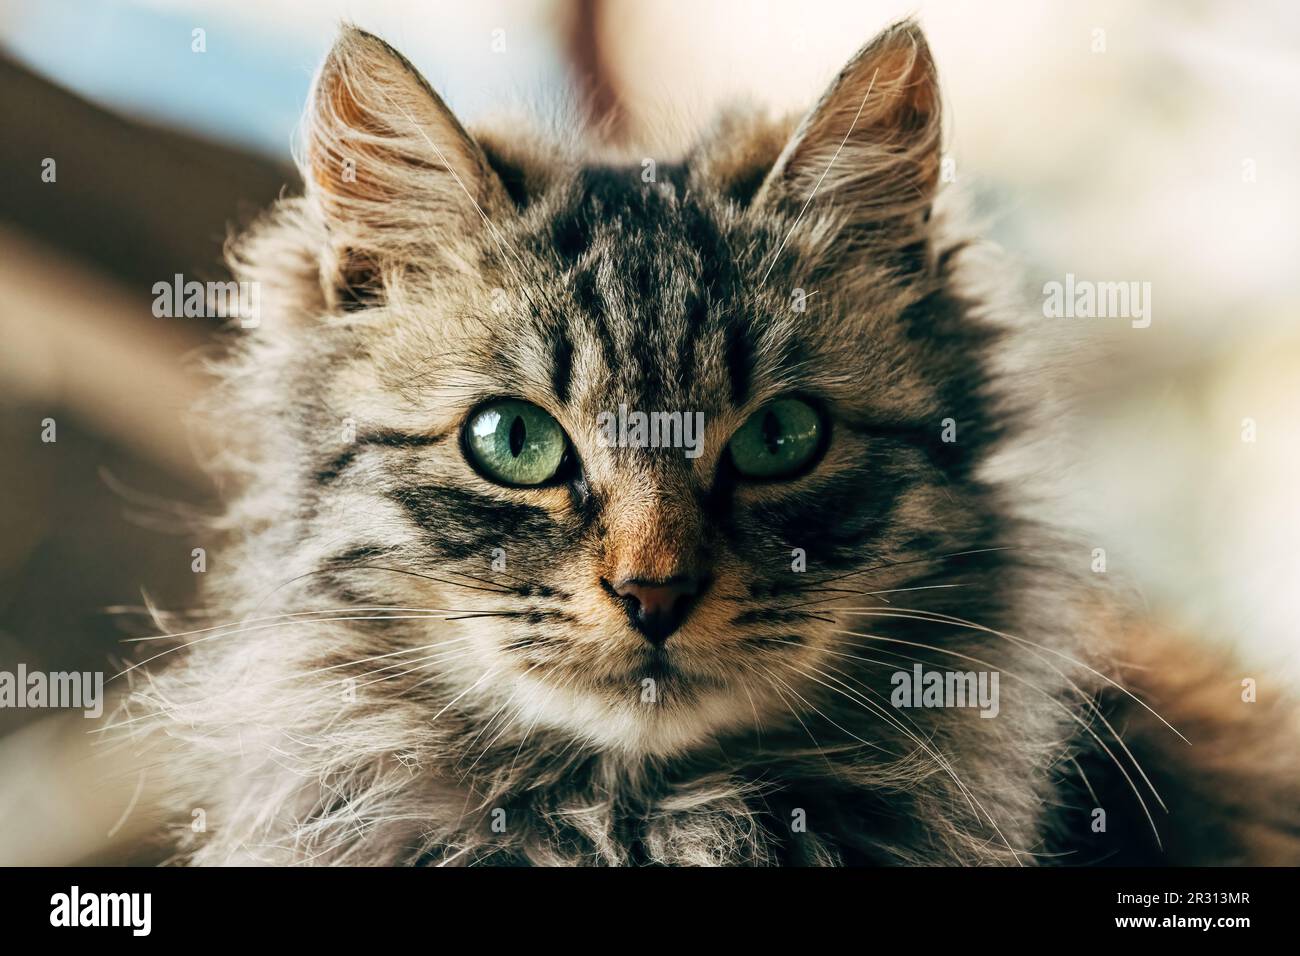 Portrait d'un chat domestique de race mixte à fourrure avec des yeux verts qui ressemble à Ragamuffin, foyer sélectif Banque D'Images